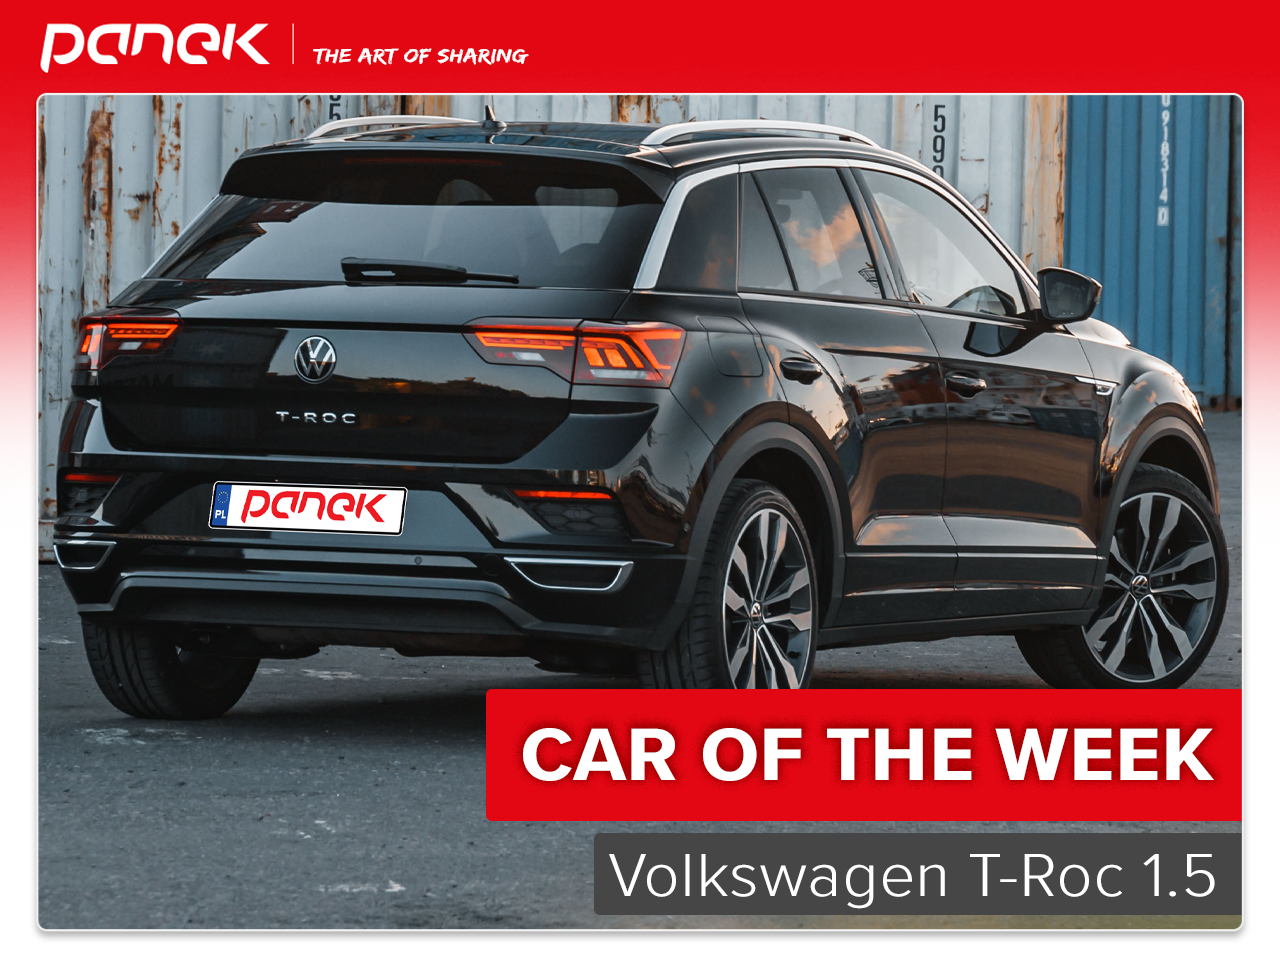 Volkswagen T-Roc - an attractive SUV in PANEK - iPanek